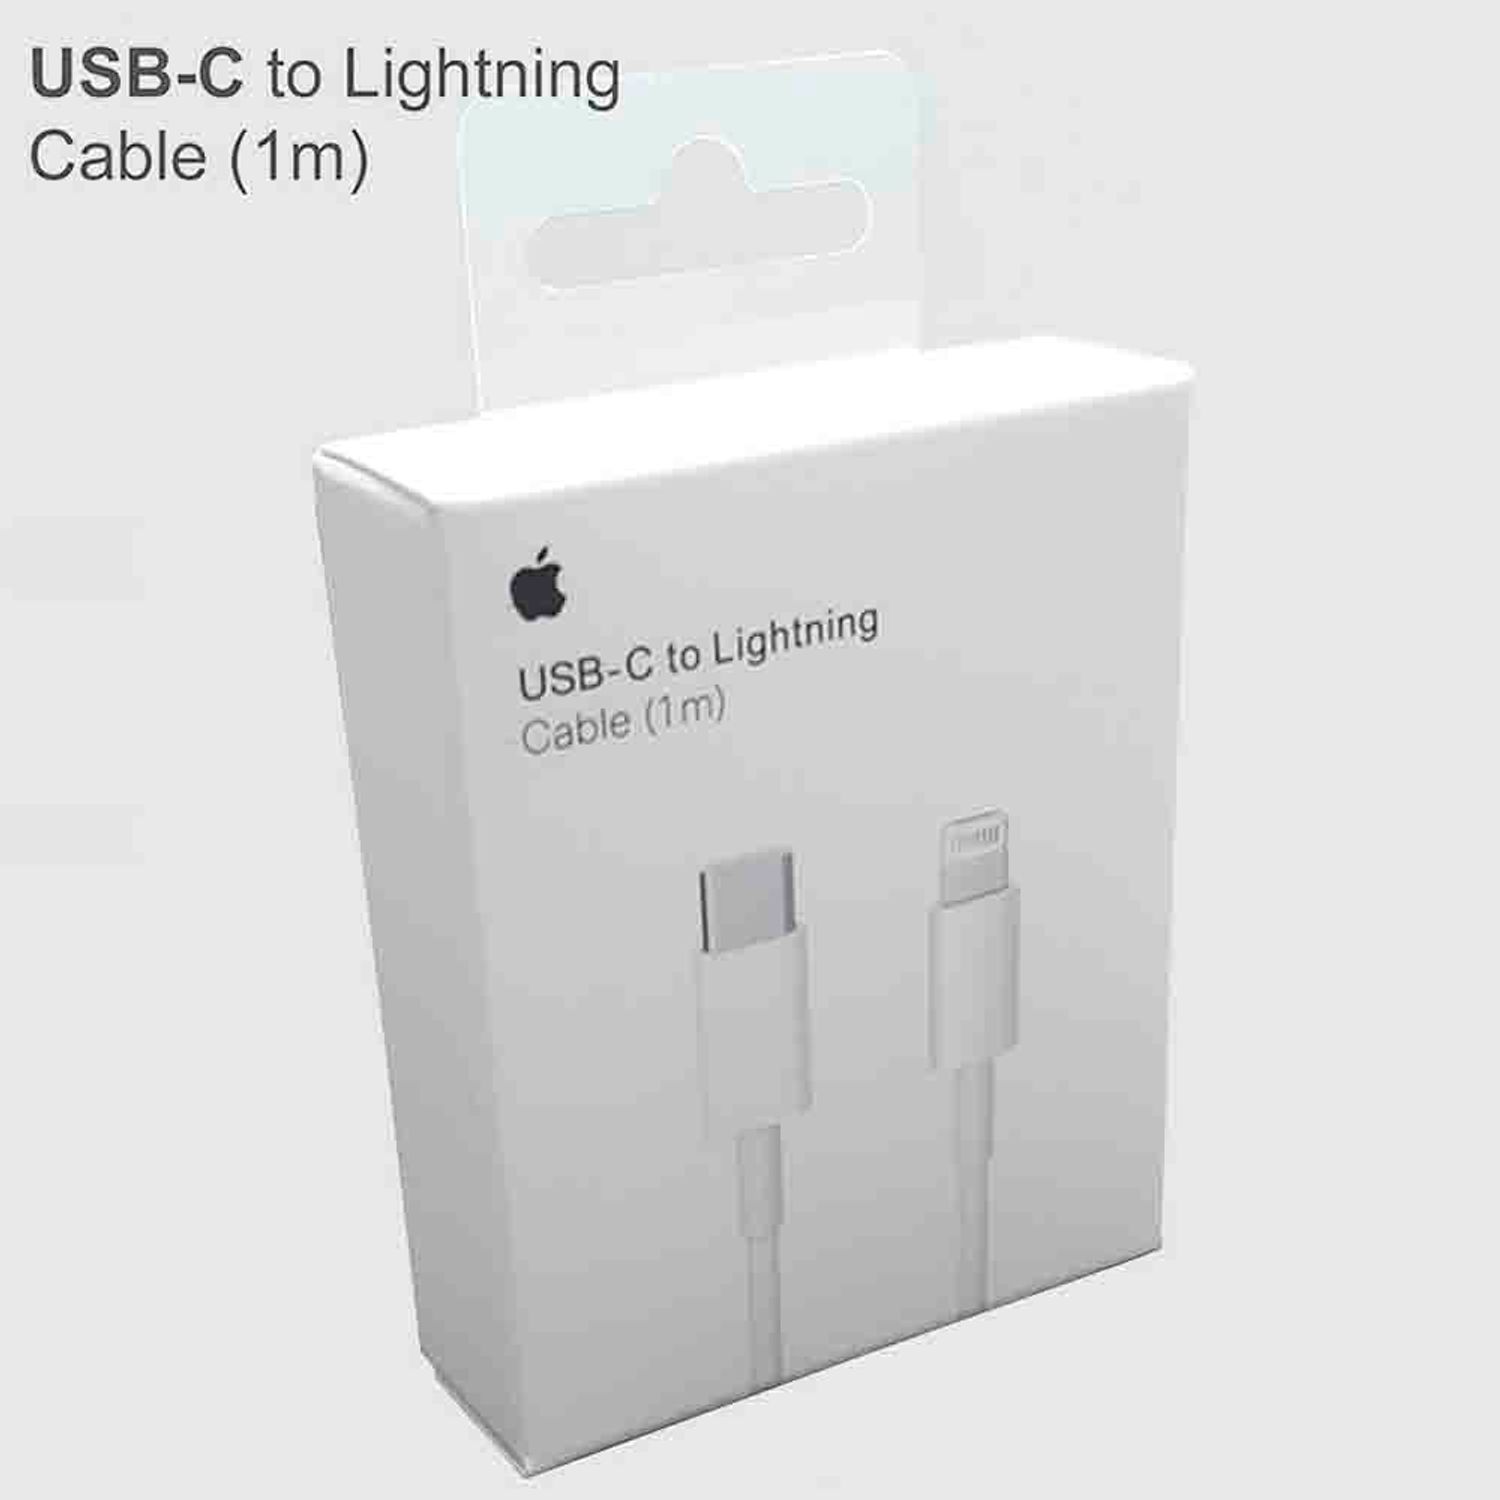 Cable usb-c a Lightning para iPhone 12, 12 pro, 12 pro Max de 1mt